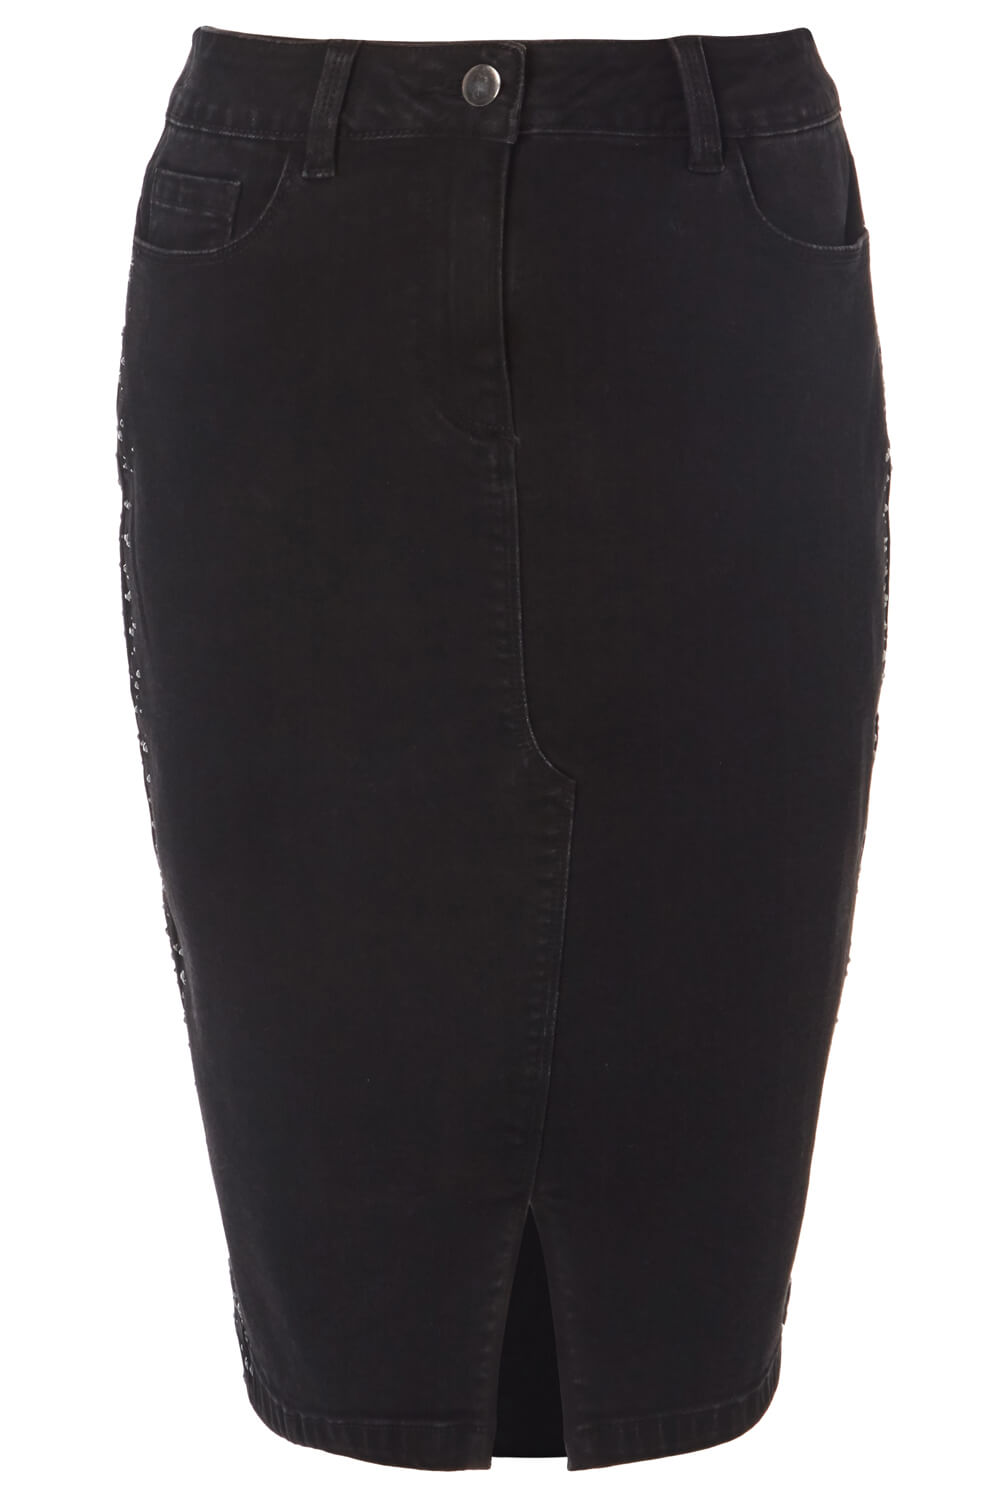 Black Sparkle Hotfix Skirt, Image 4 of 4